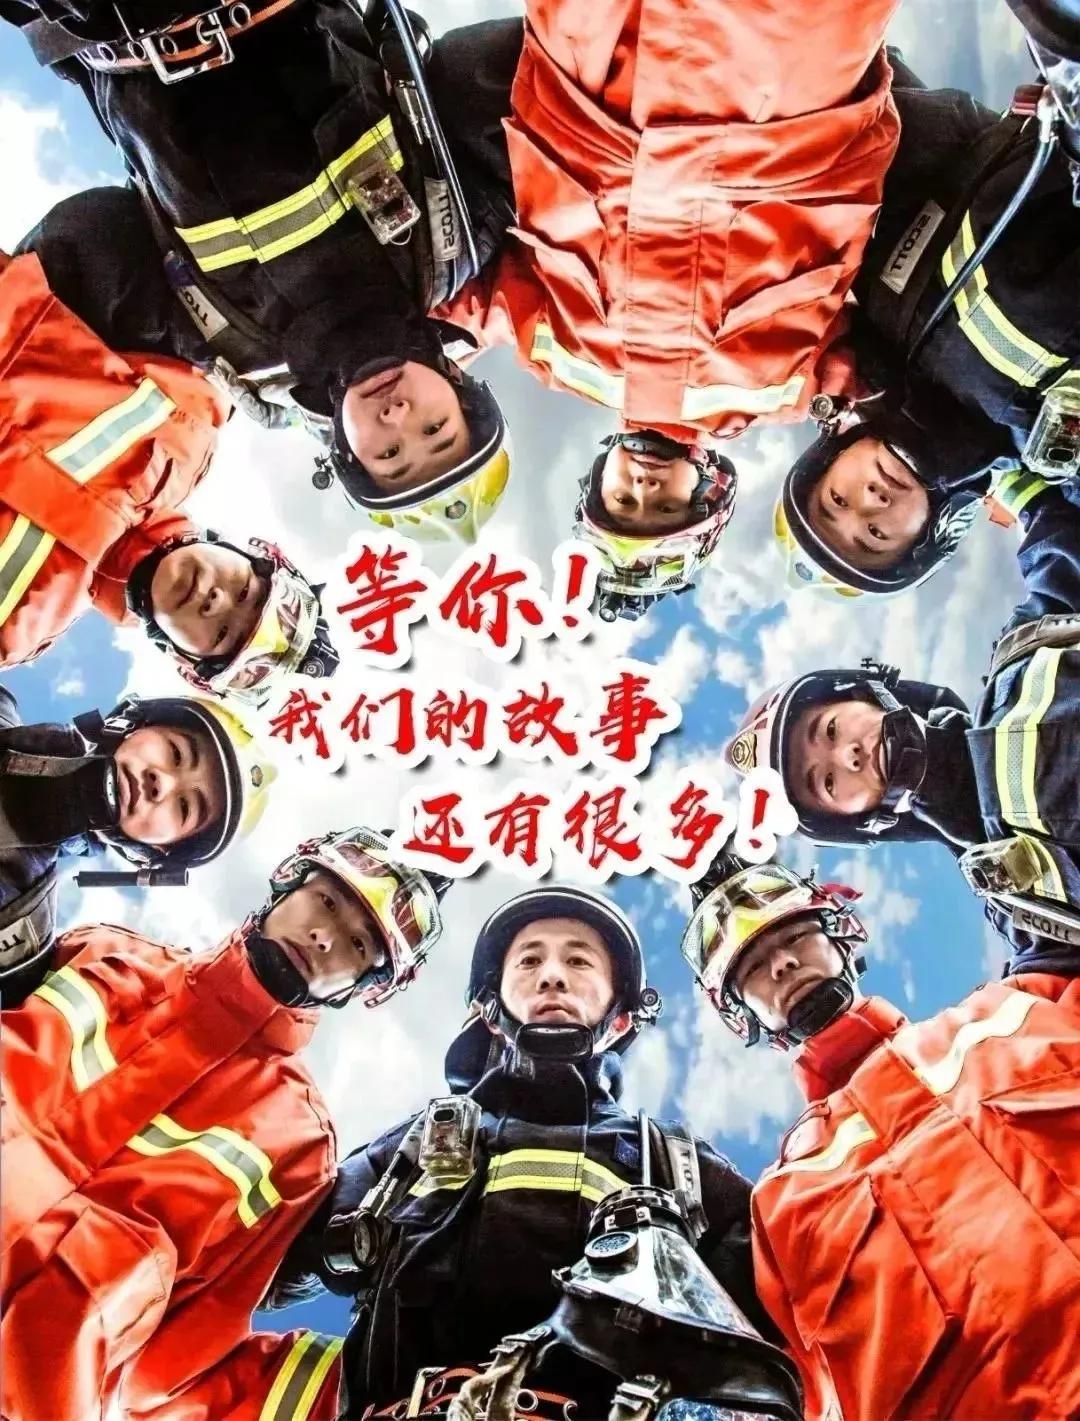 武汉市消防救援支队战"疫"纪实 - 人物 - 人民周刊网—主流舆论融合平台